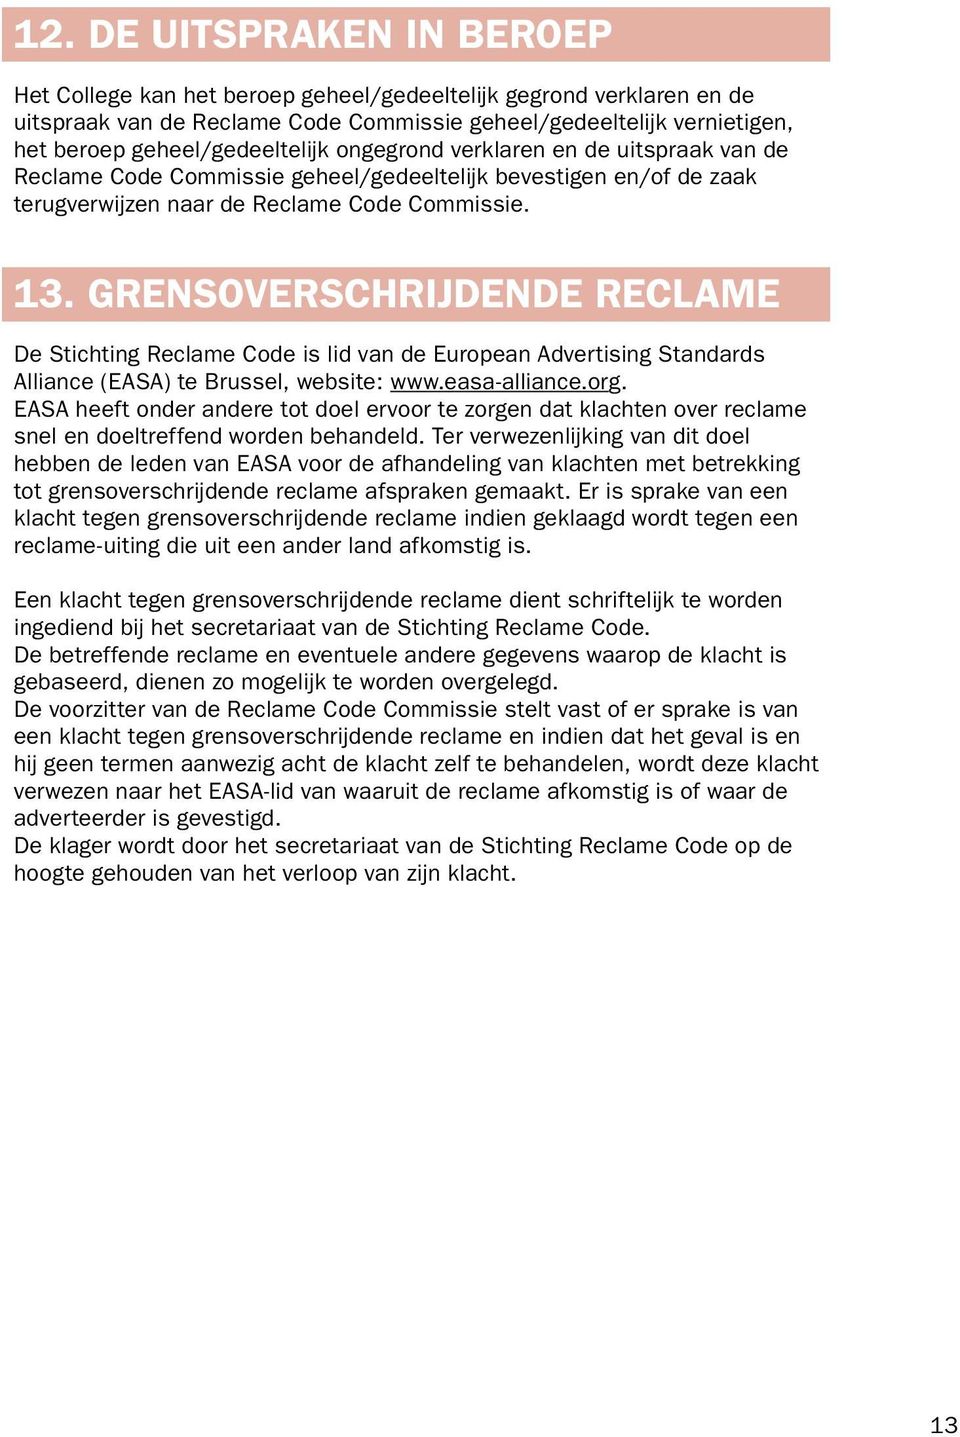 Grensoverschrijdende reclame De Stichting Reclame Code is lid van de European Advertising Standards Alliance (EASA) te Brussel, website: www.easa-alliance.org.